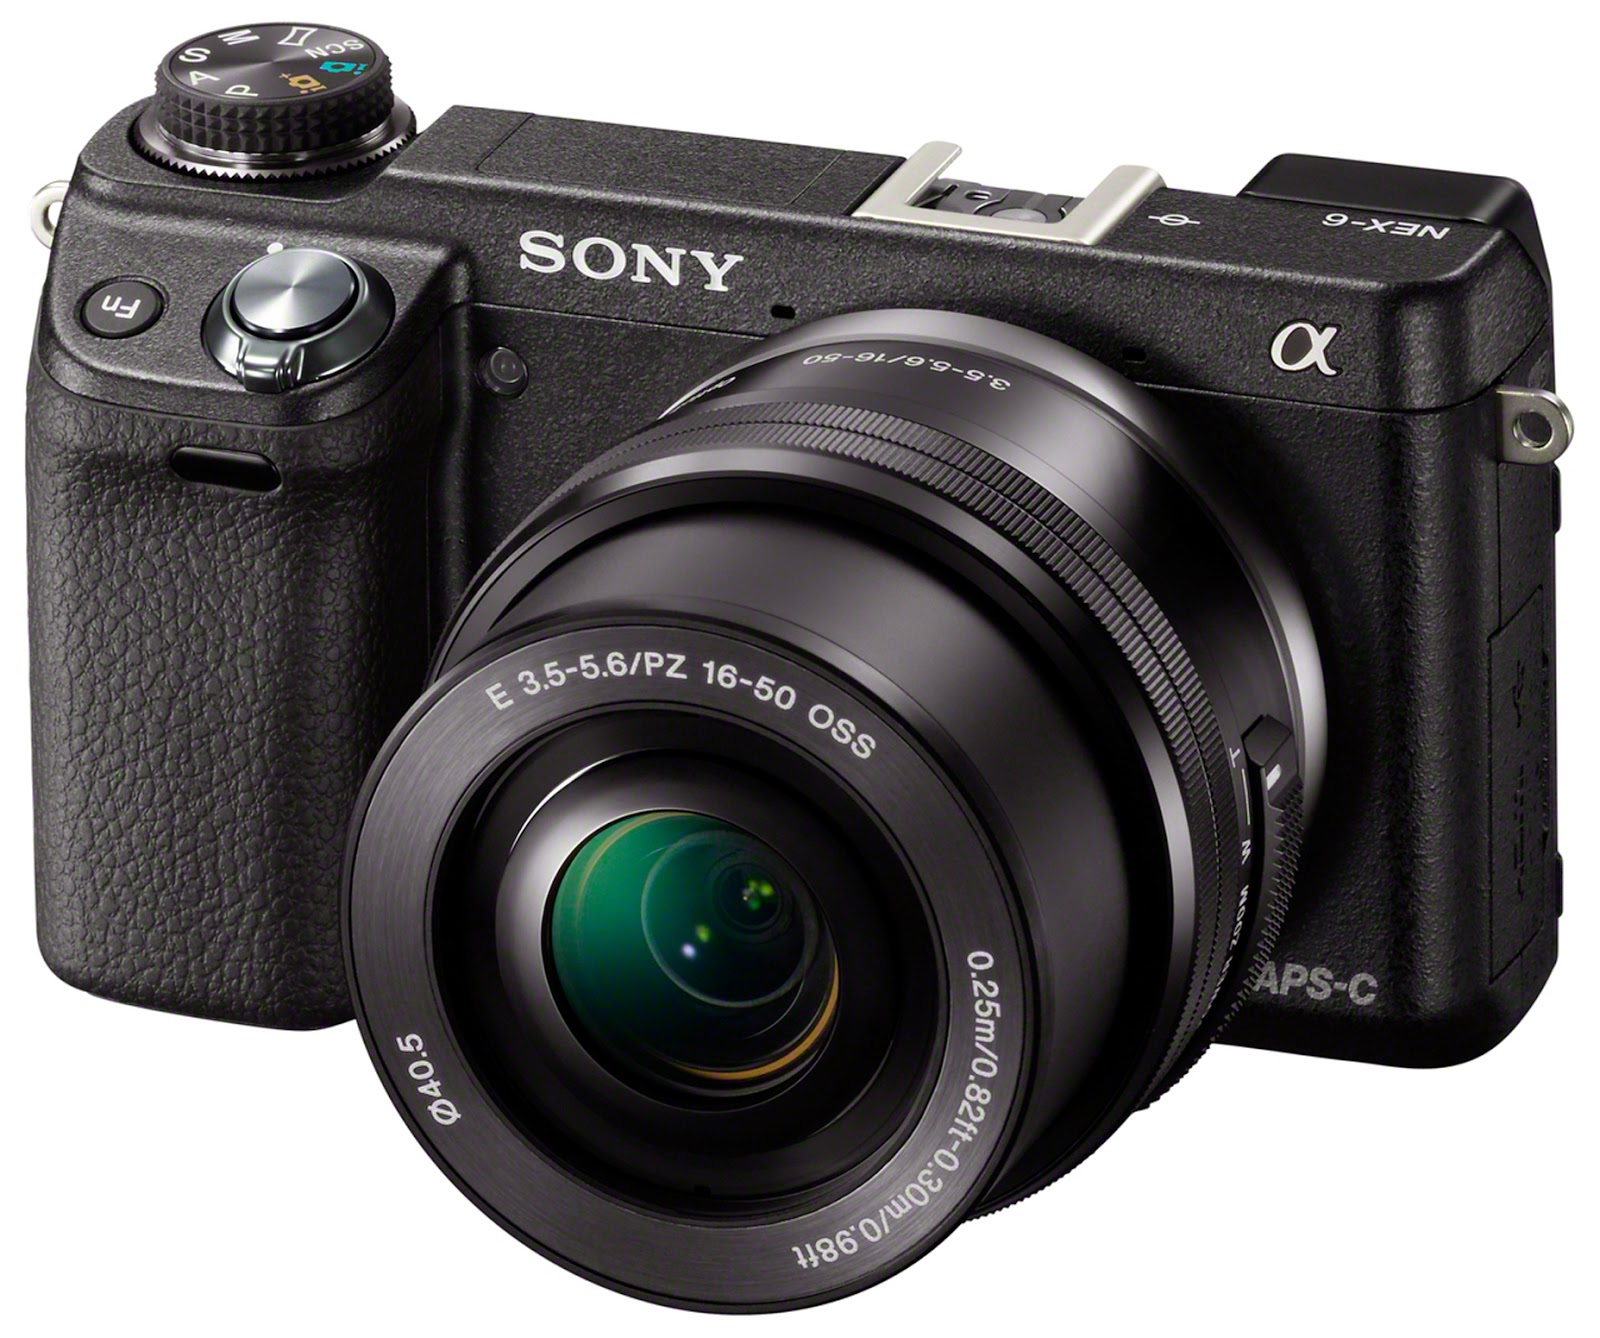 Harga Kamera Sony Full Lengkap